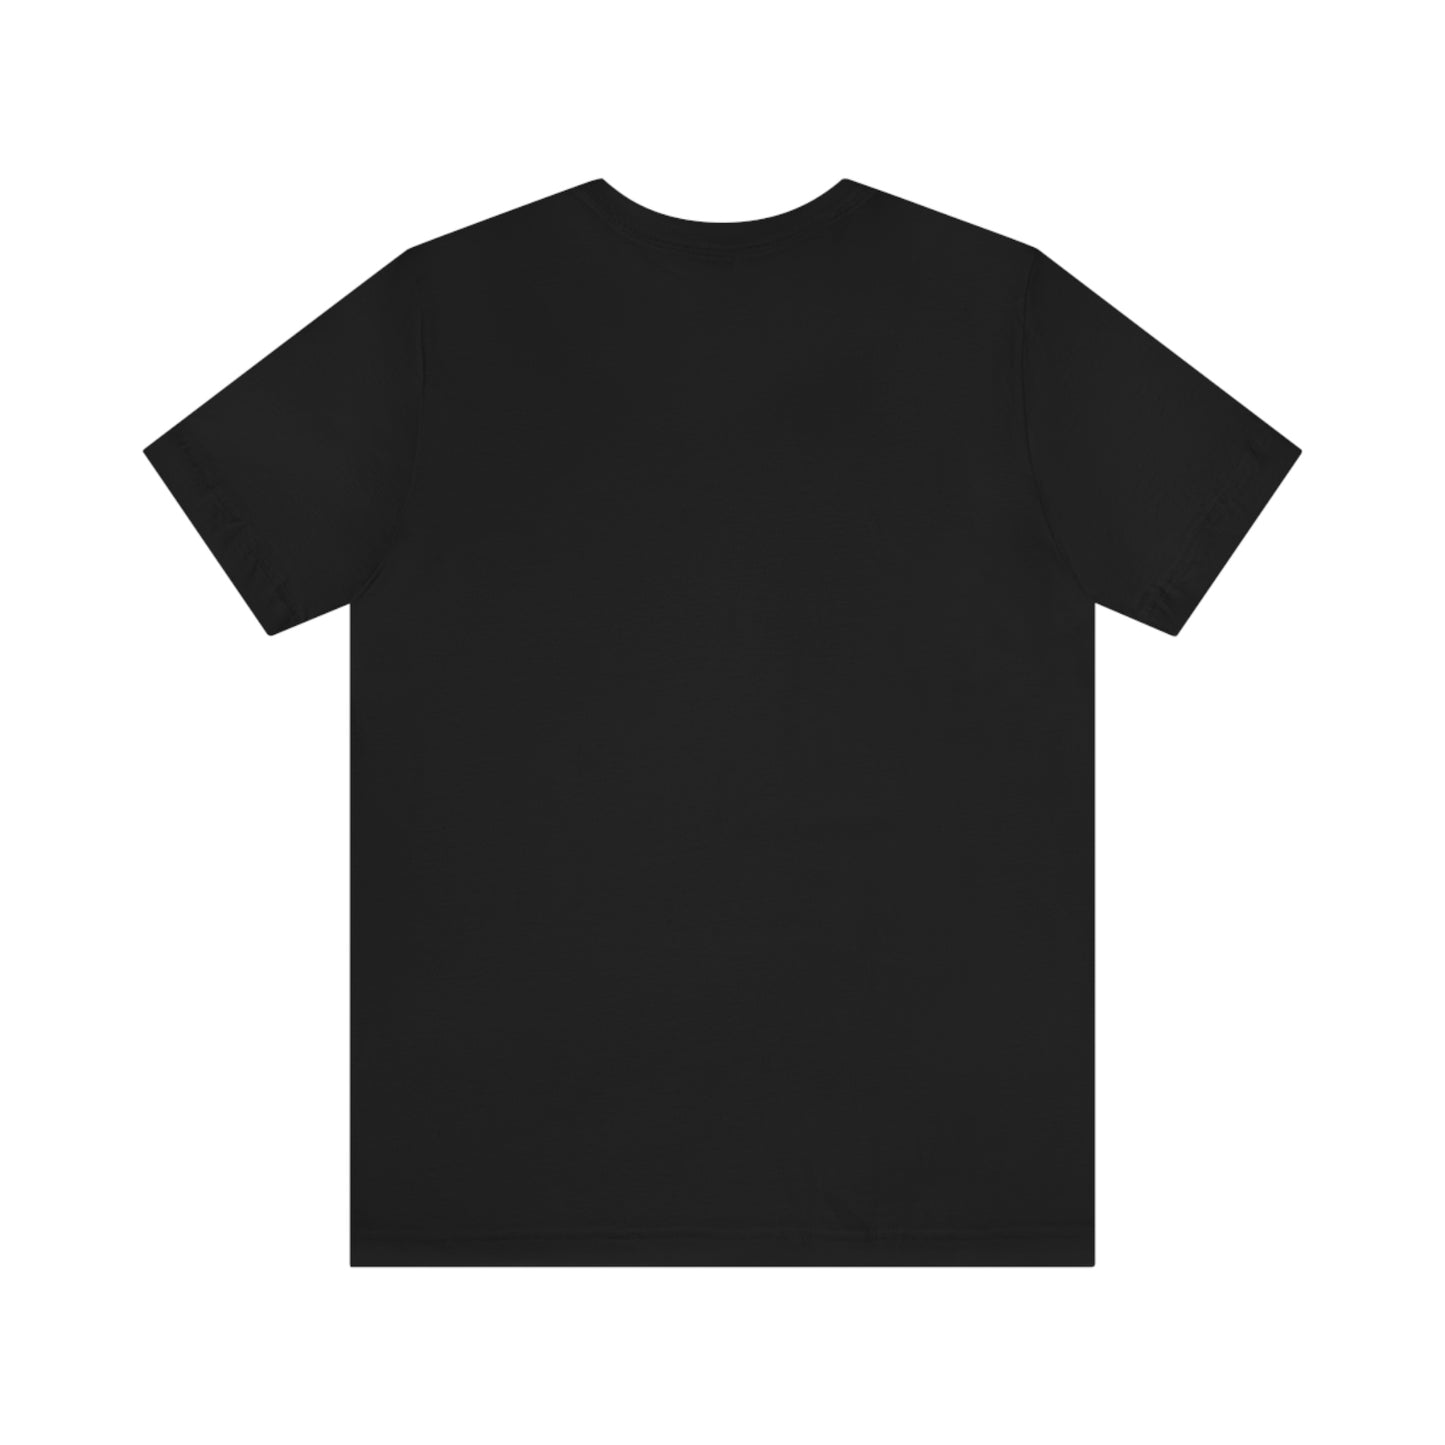 Slowpoke Team Shirt Black